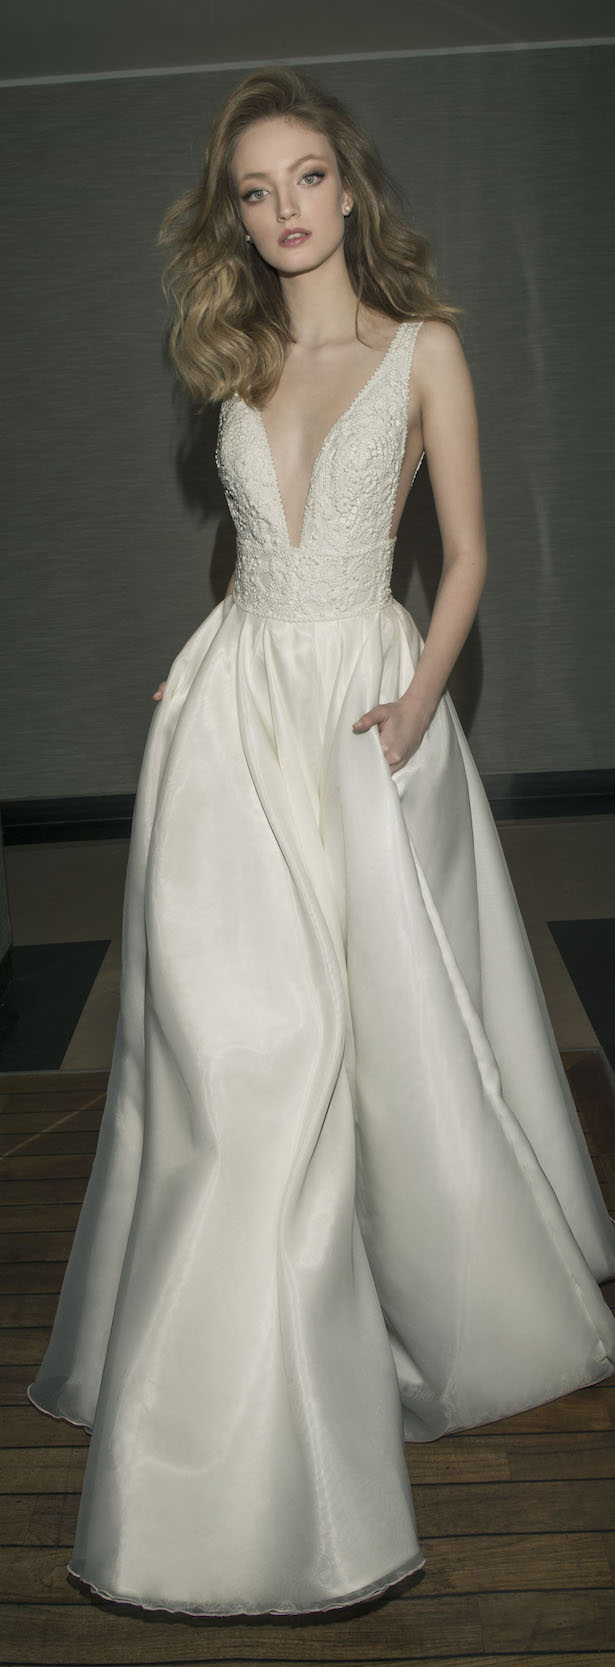 Dany Mizrachi 2016 Wedding Dress